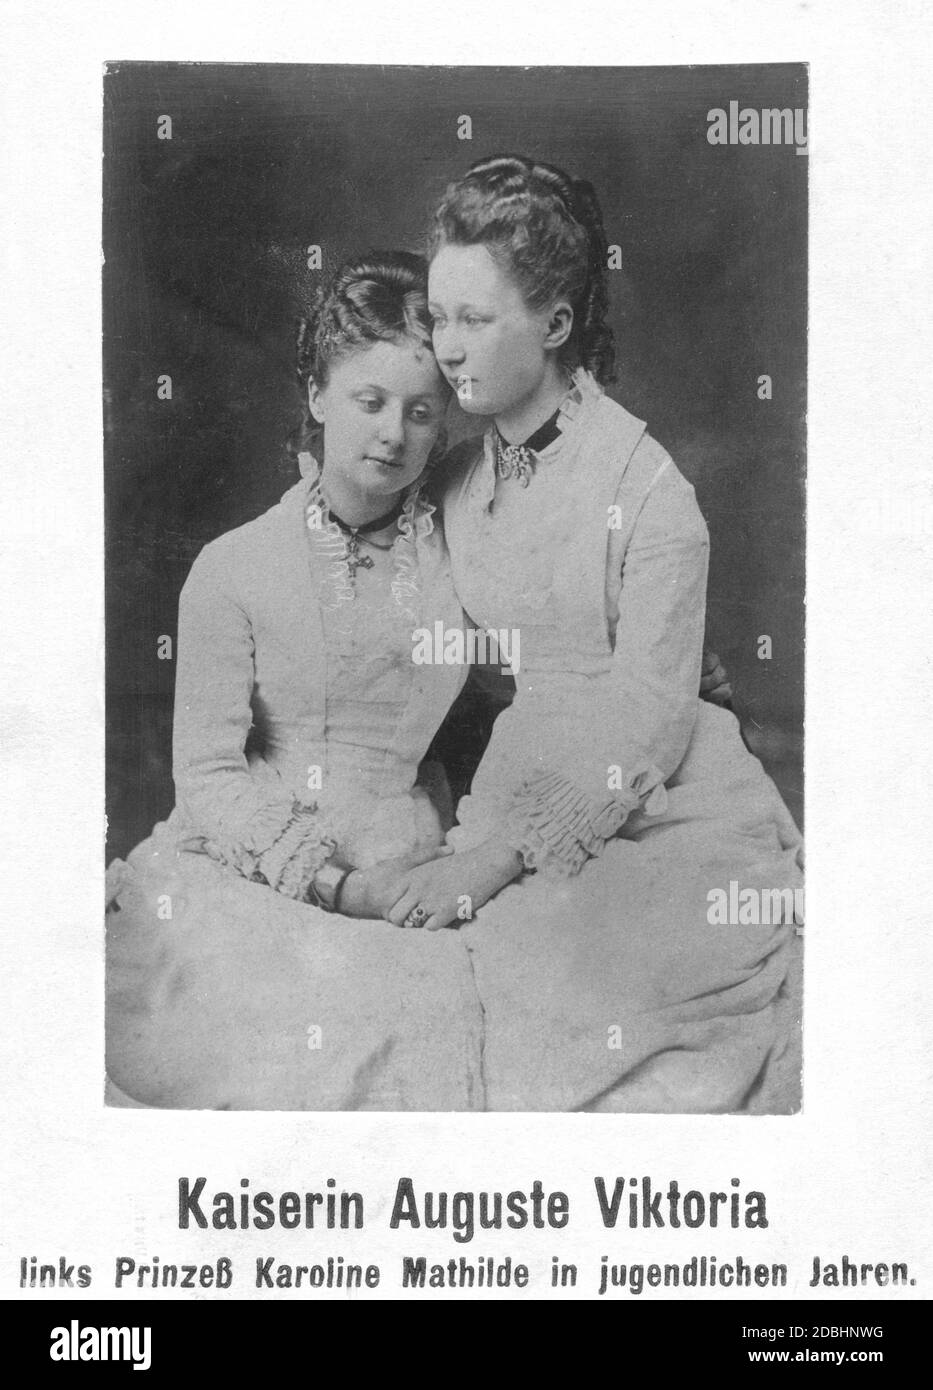 Das Porträt zeigt die Schwestern und Prinzessinnen Caroline Mathilde (links) und Augusta Victoria von Schleswig-Holstein-Sonderburg-Augustenburg (rechts, spätere Kaiserin von Deutschland). Undatierte Aufnahme, aufgenommen um 1875. Stockfoto